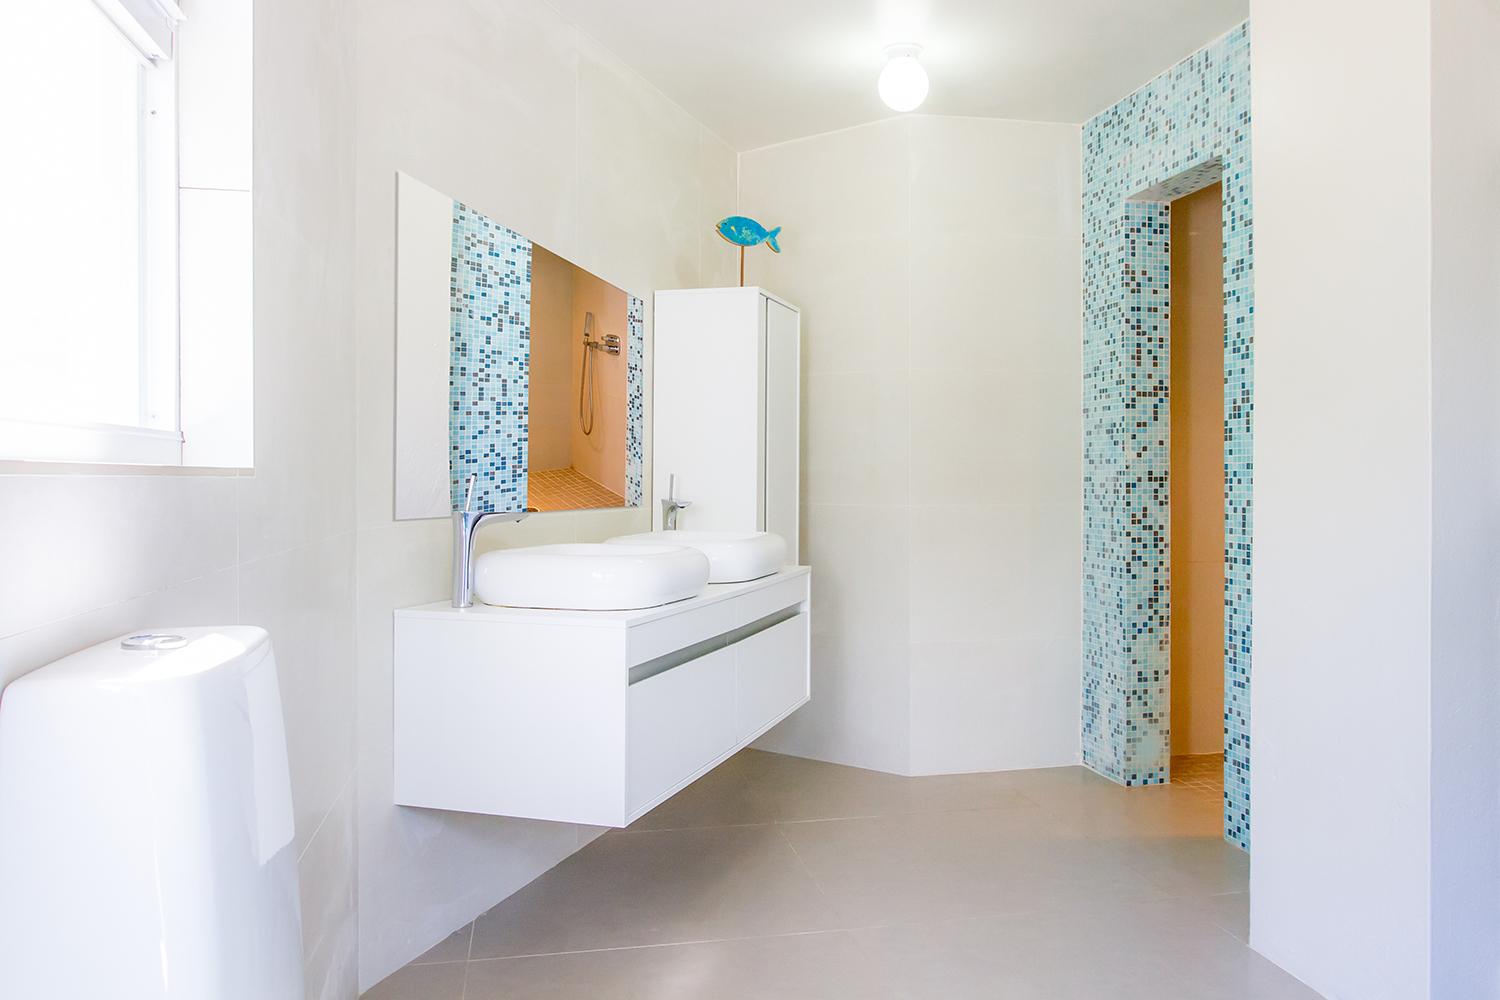 Begehbare Dusche #badezimmer ©Global Inspirations Design